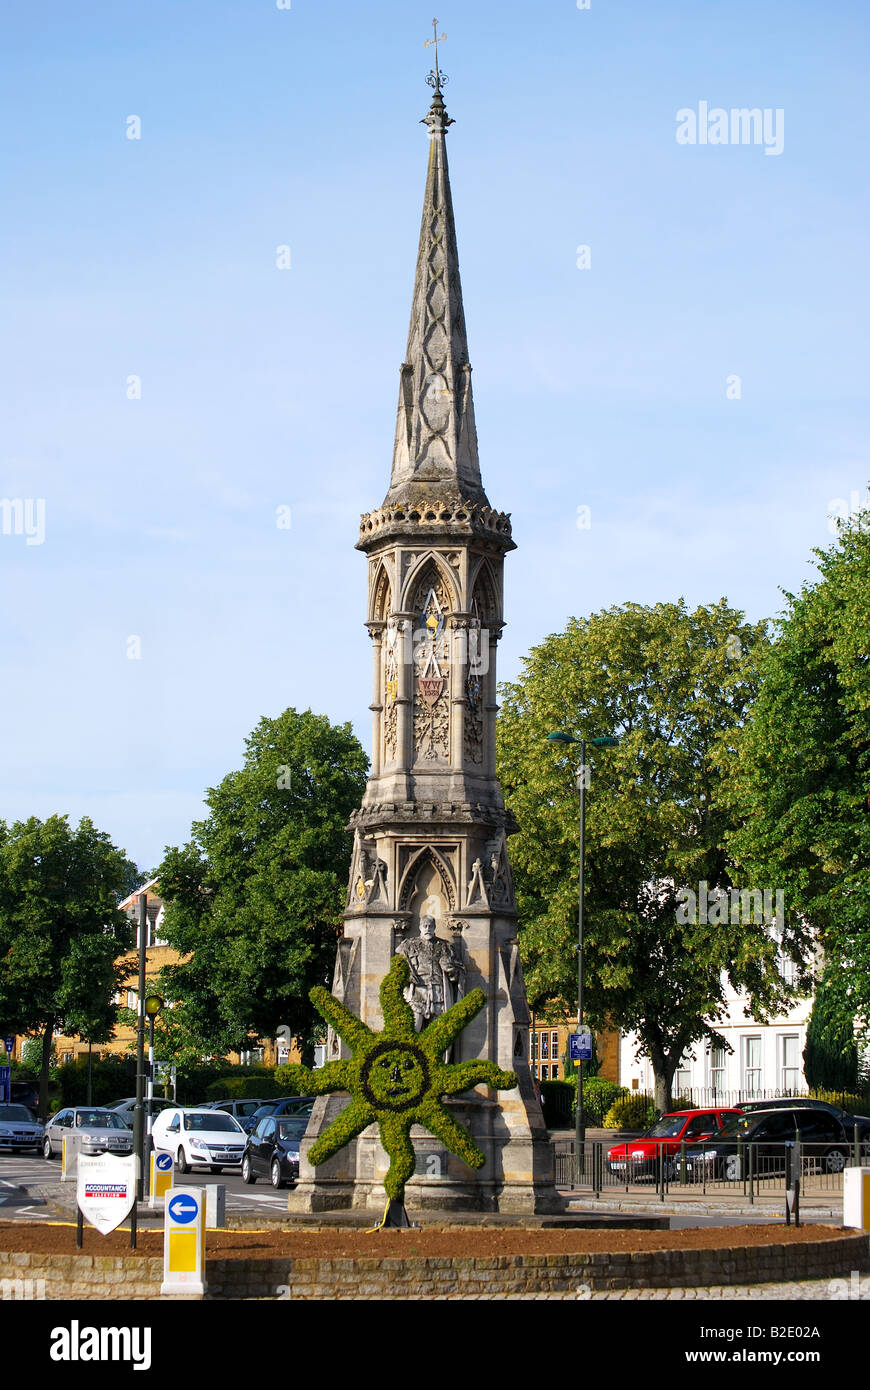 Banbury Cross, Banbury, Oxfordshire, England, United Kingdom Stock Photo